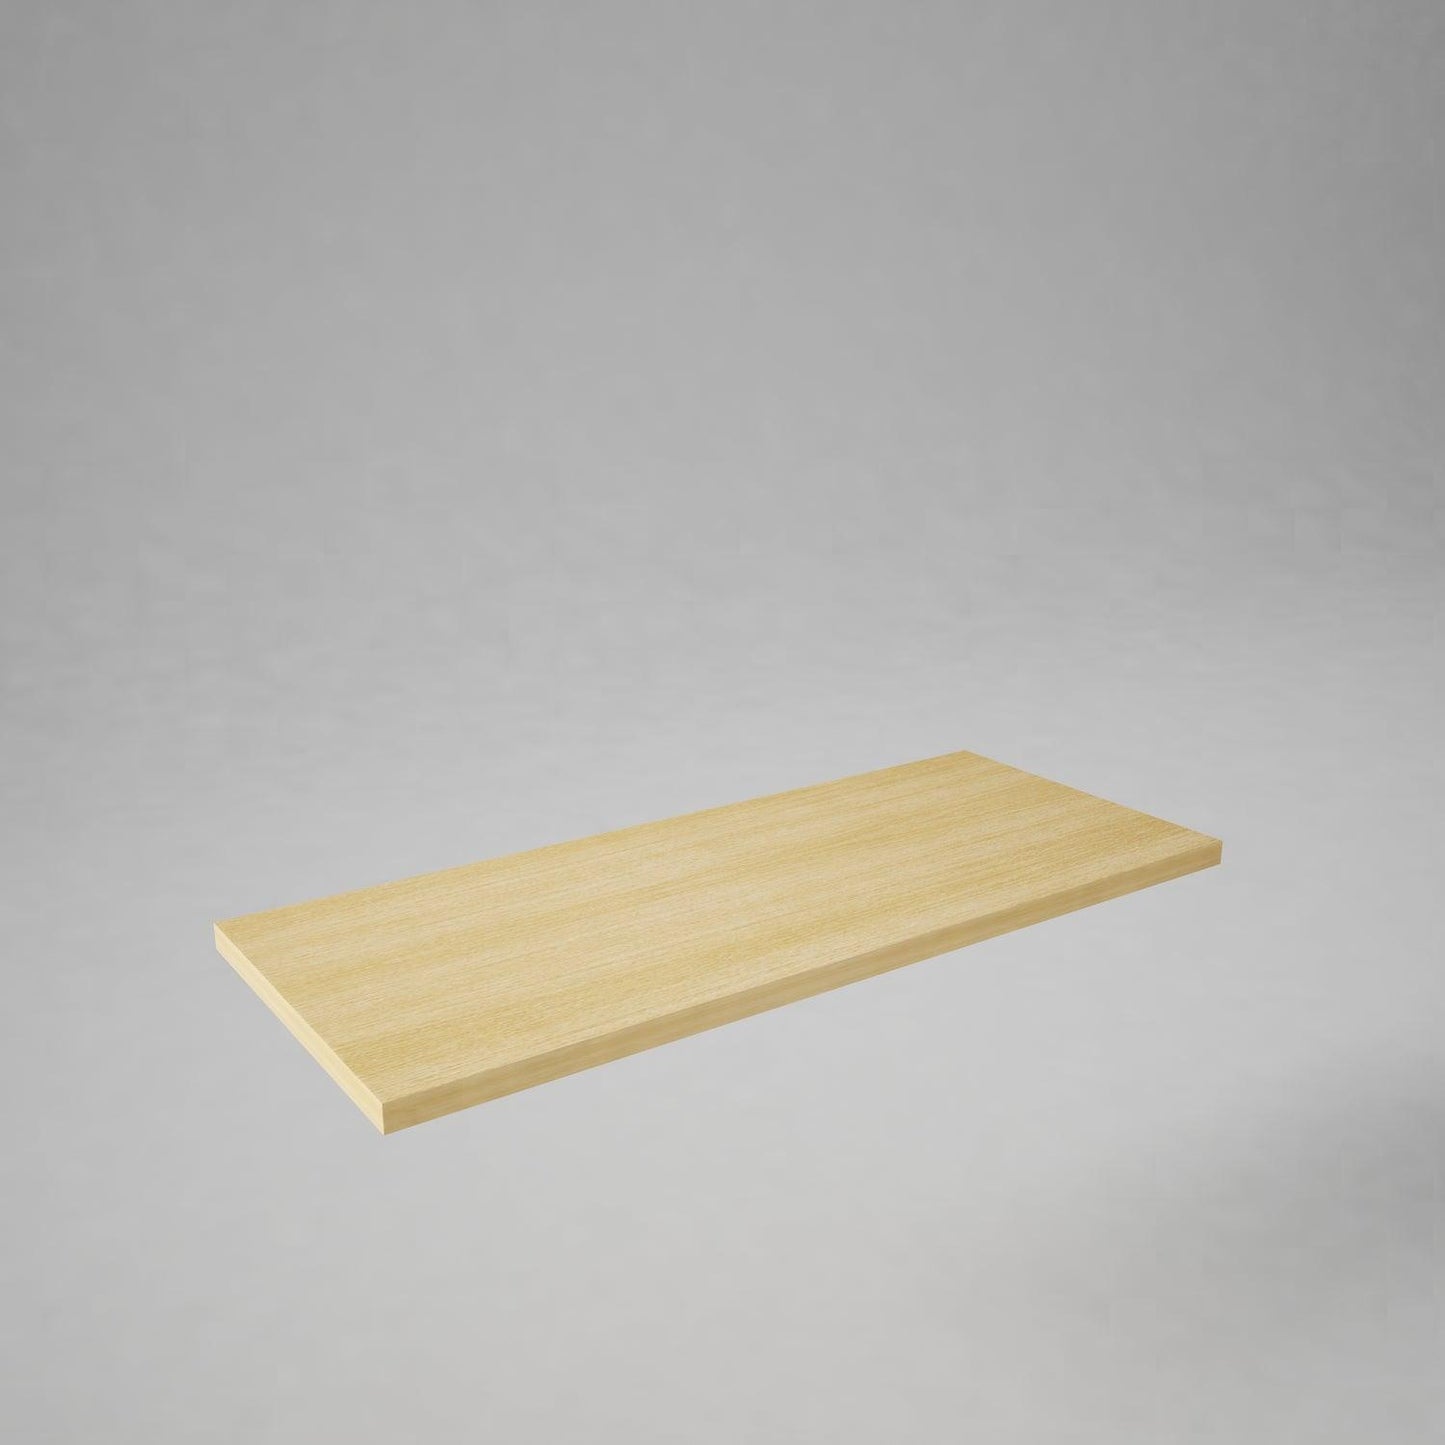 Wooden Shelf - Fixturic